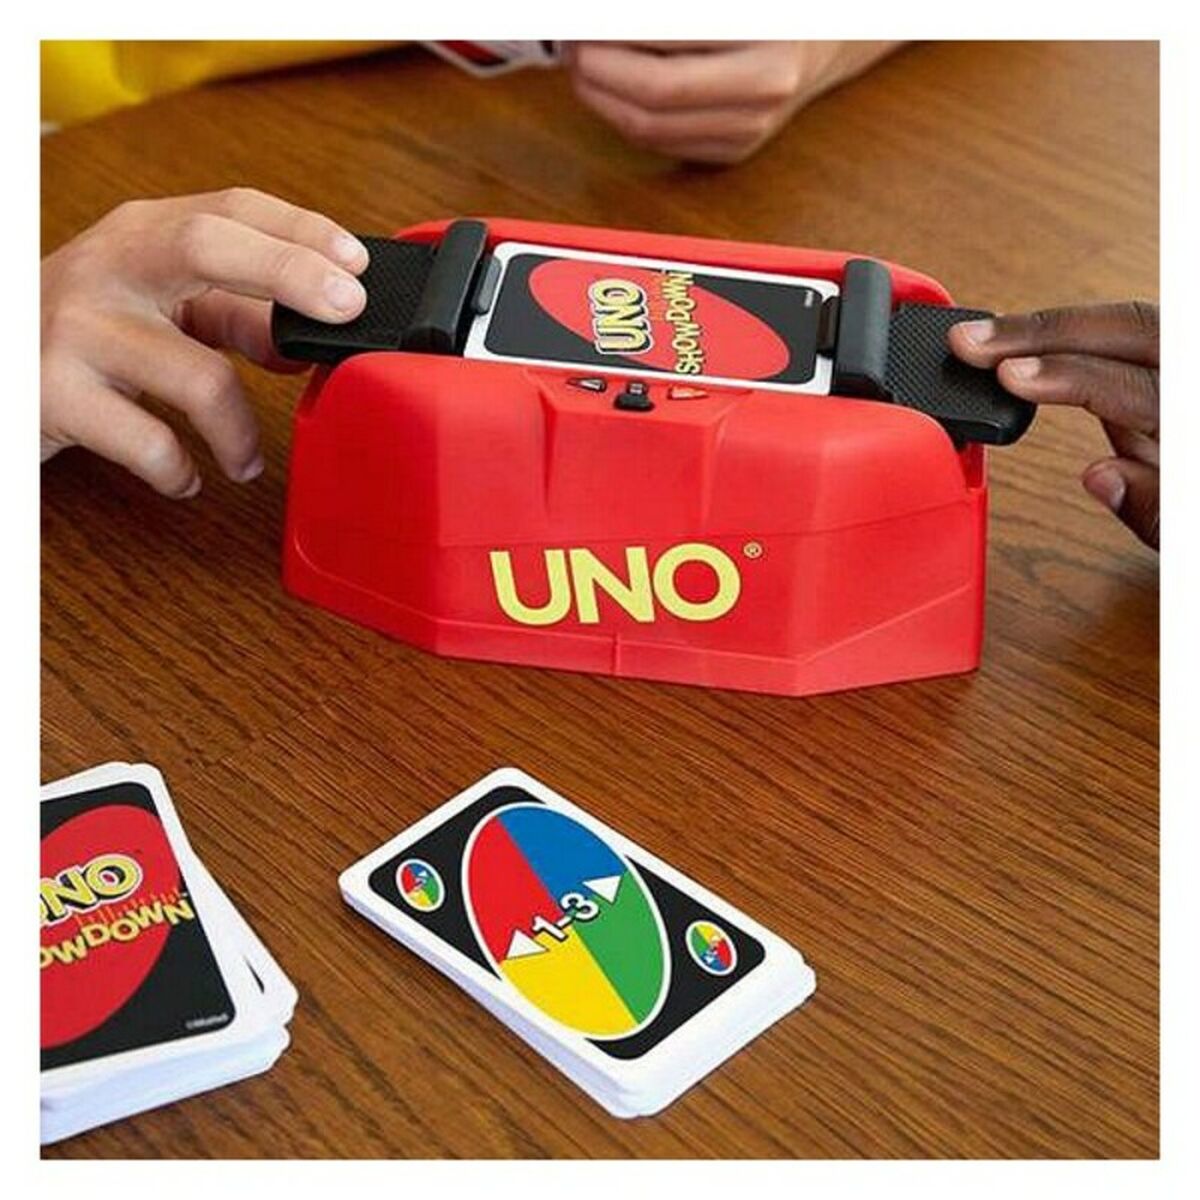 Card Game Mattel UNO Showdown